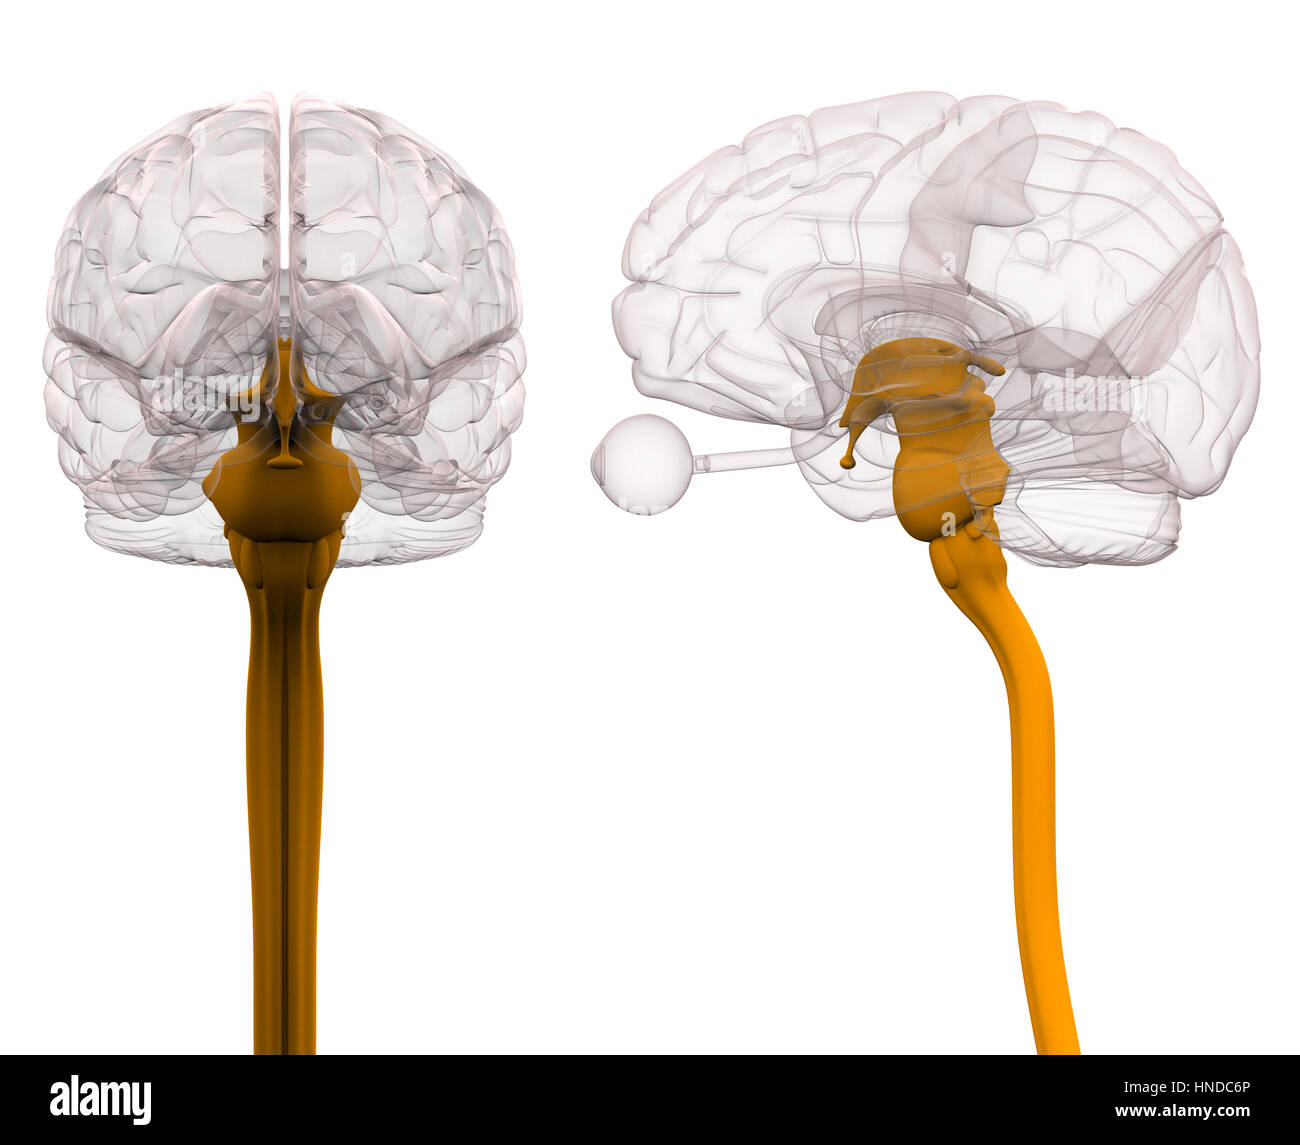 L'anatomie du cerveau de la moelle épinière - 3d illustration Banque D'Images